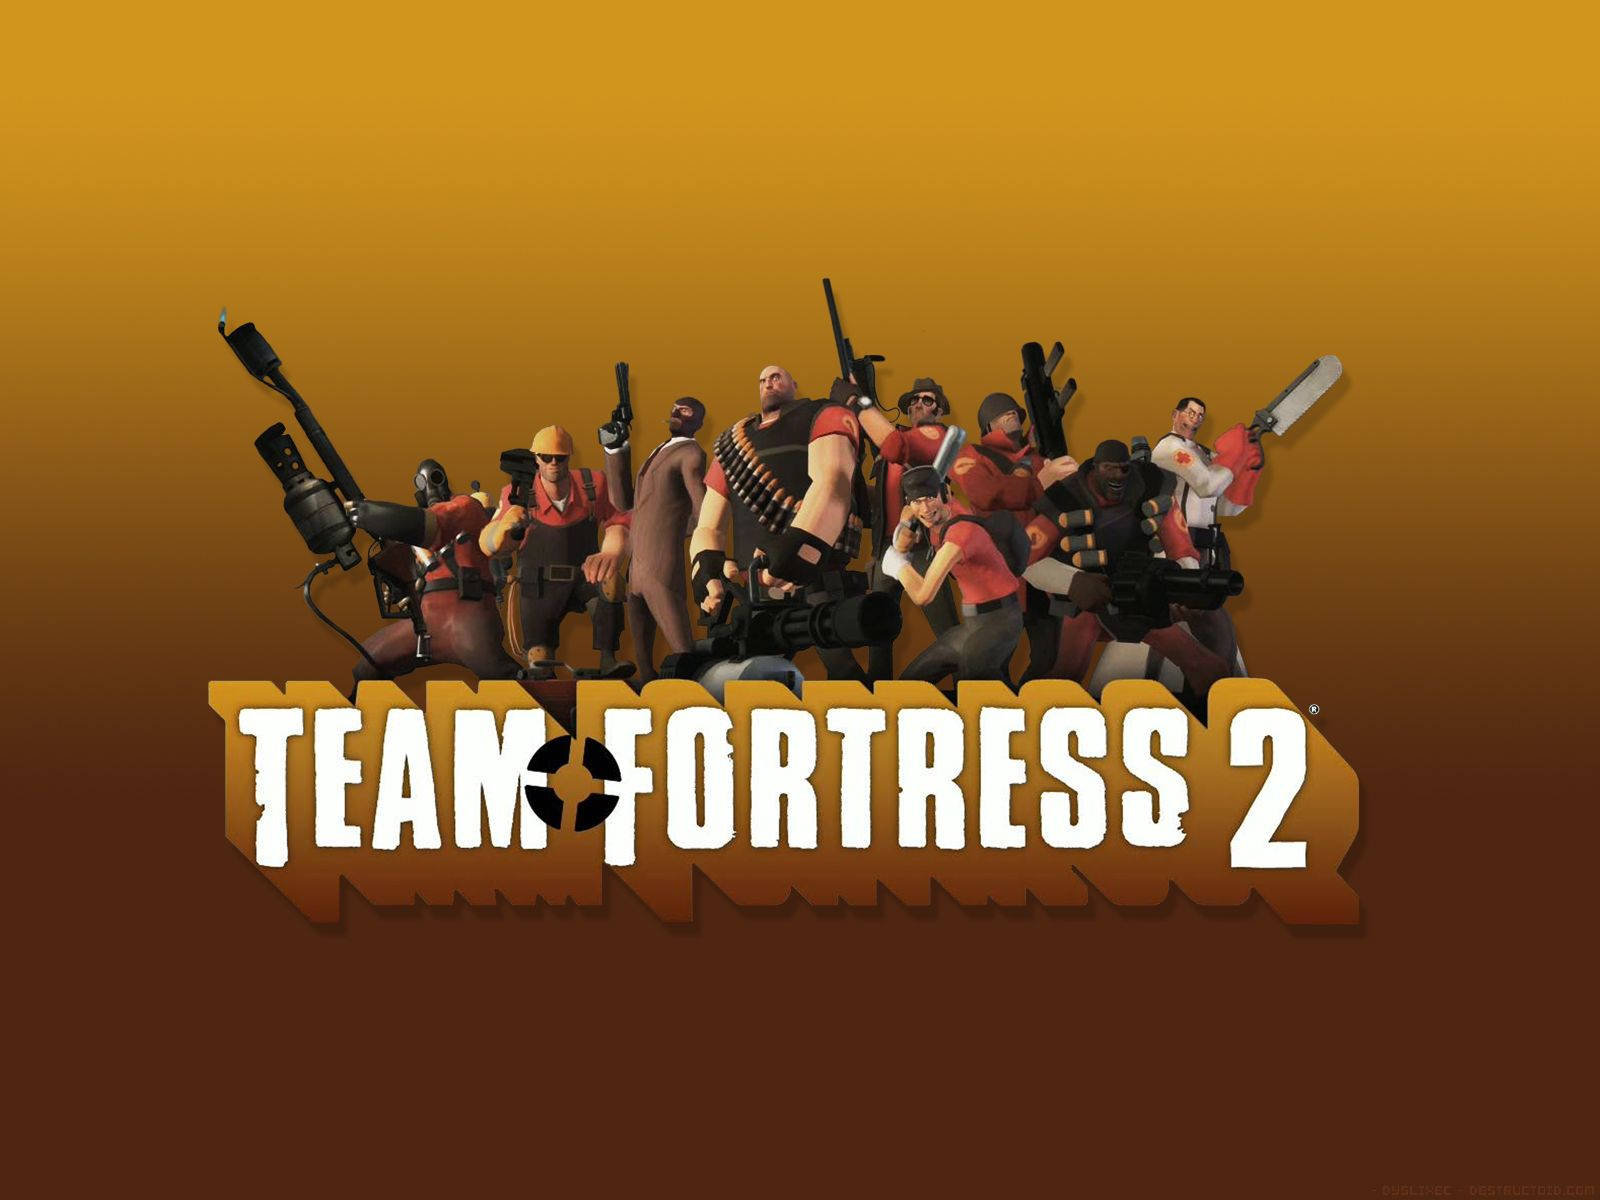 Teamfortress 2 Hintergrund In Dunklem Gold. Wallpaper